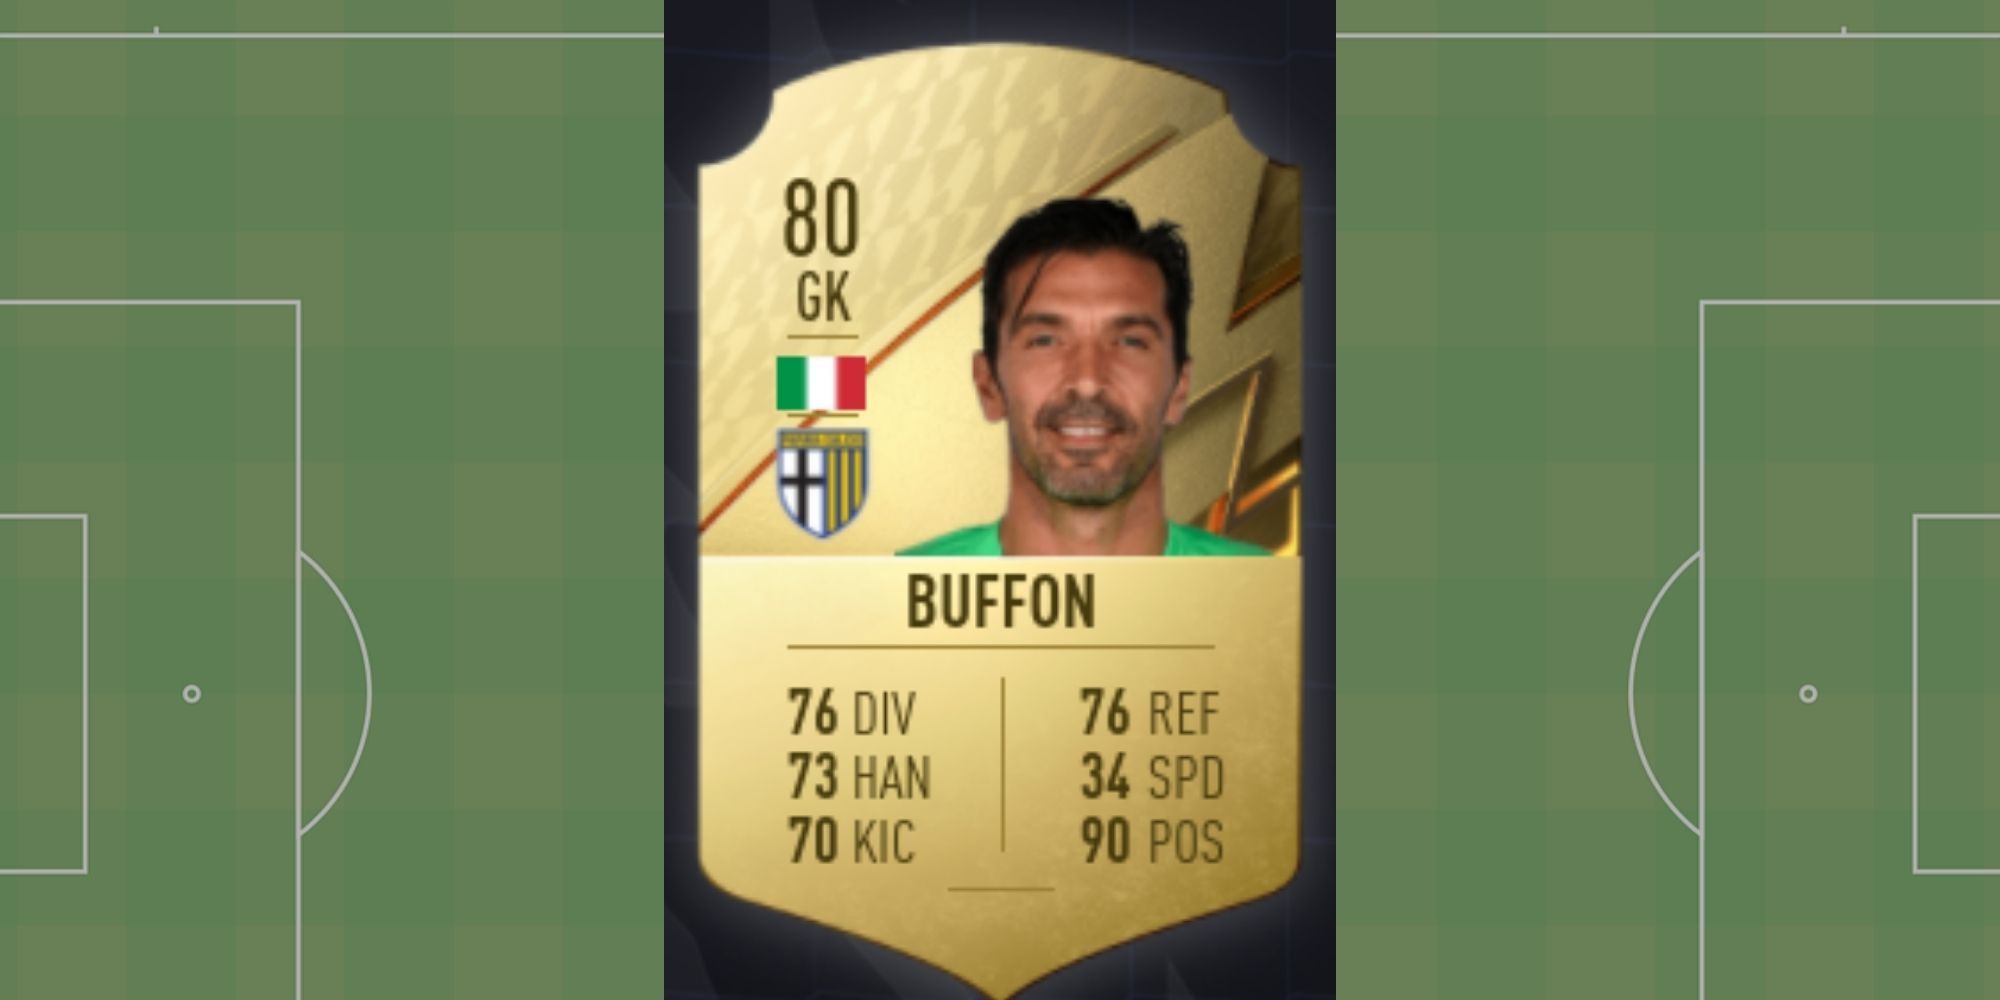 Gianluigi Buffon's FUT card in FIFA 22.